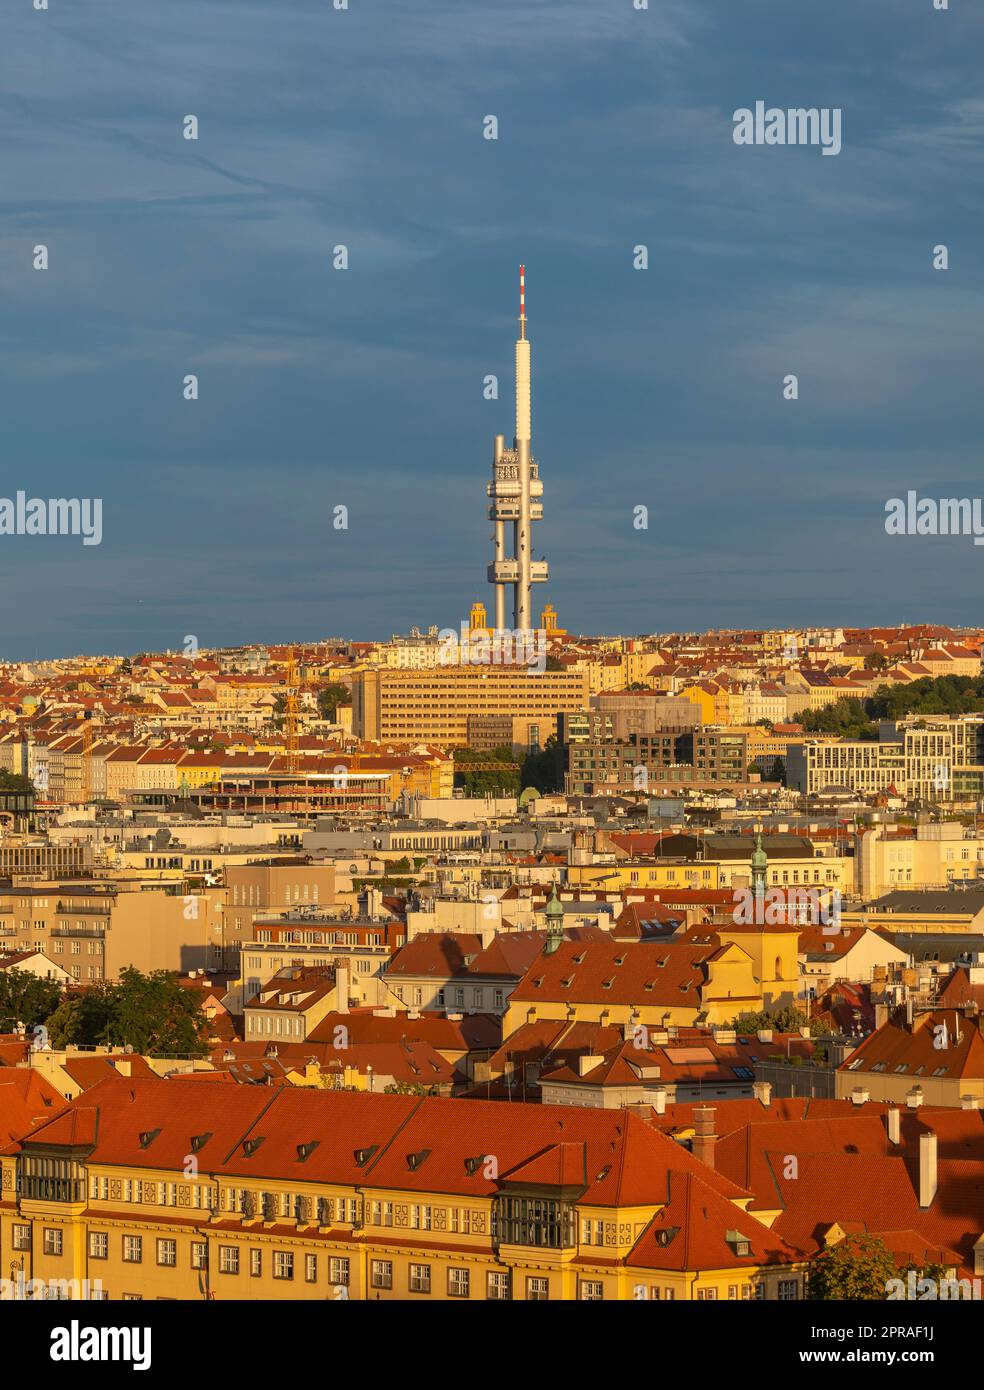 PRAGA, REPÚBLICA CHECA, EUROPA - Torre de televisión Zizkov, una torre de transmisor de 216m, y paisaje urbano. Foto de stock